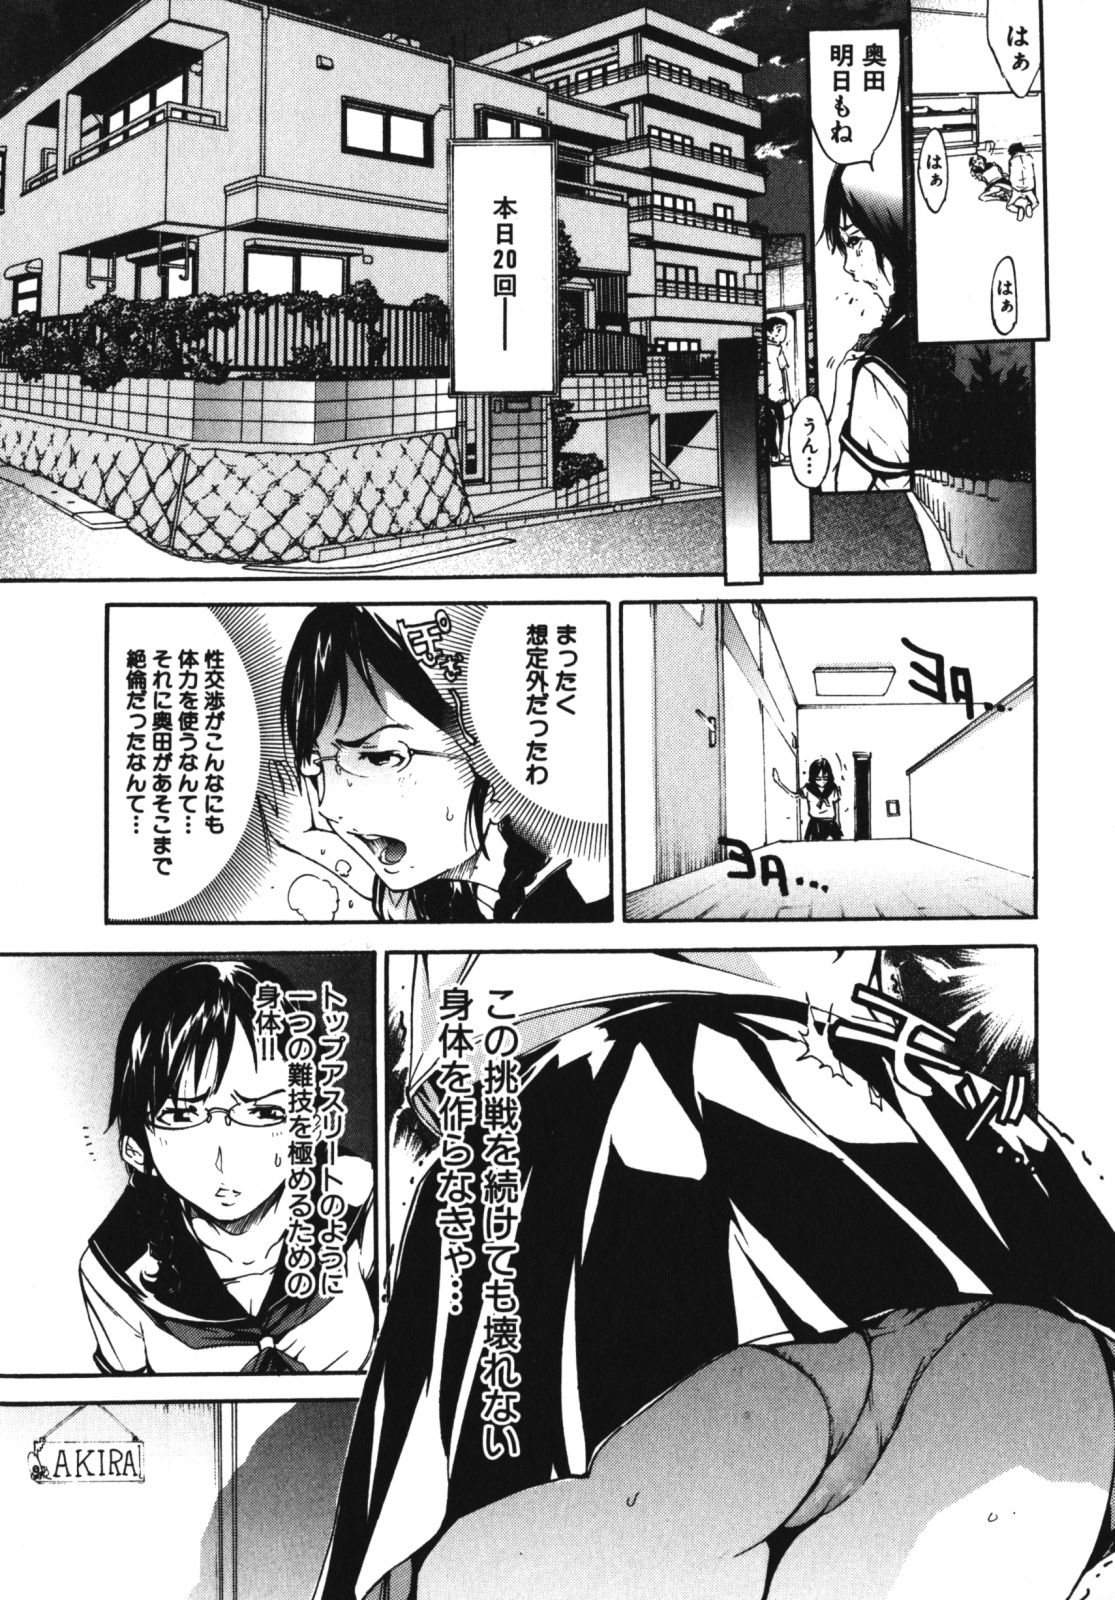 [Anthology] Geki Yaba Vol.4 - Namade Shitene page 44 full